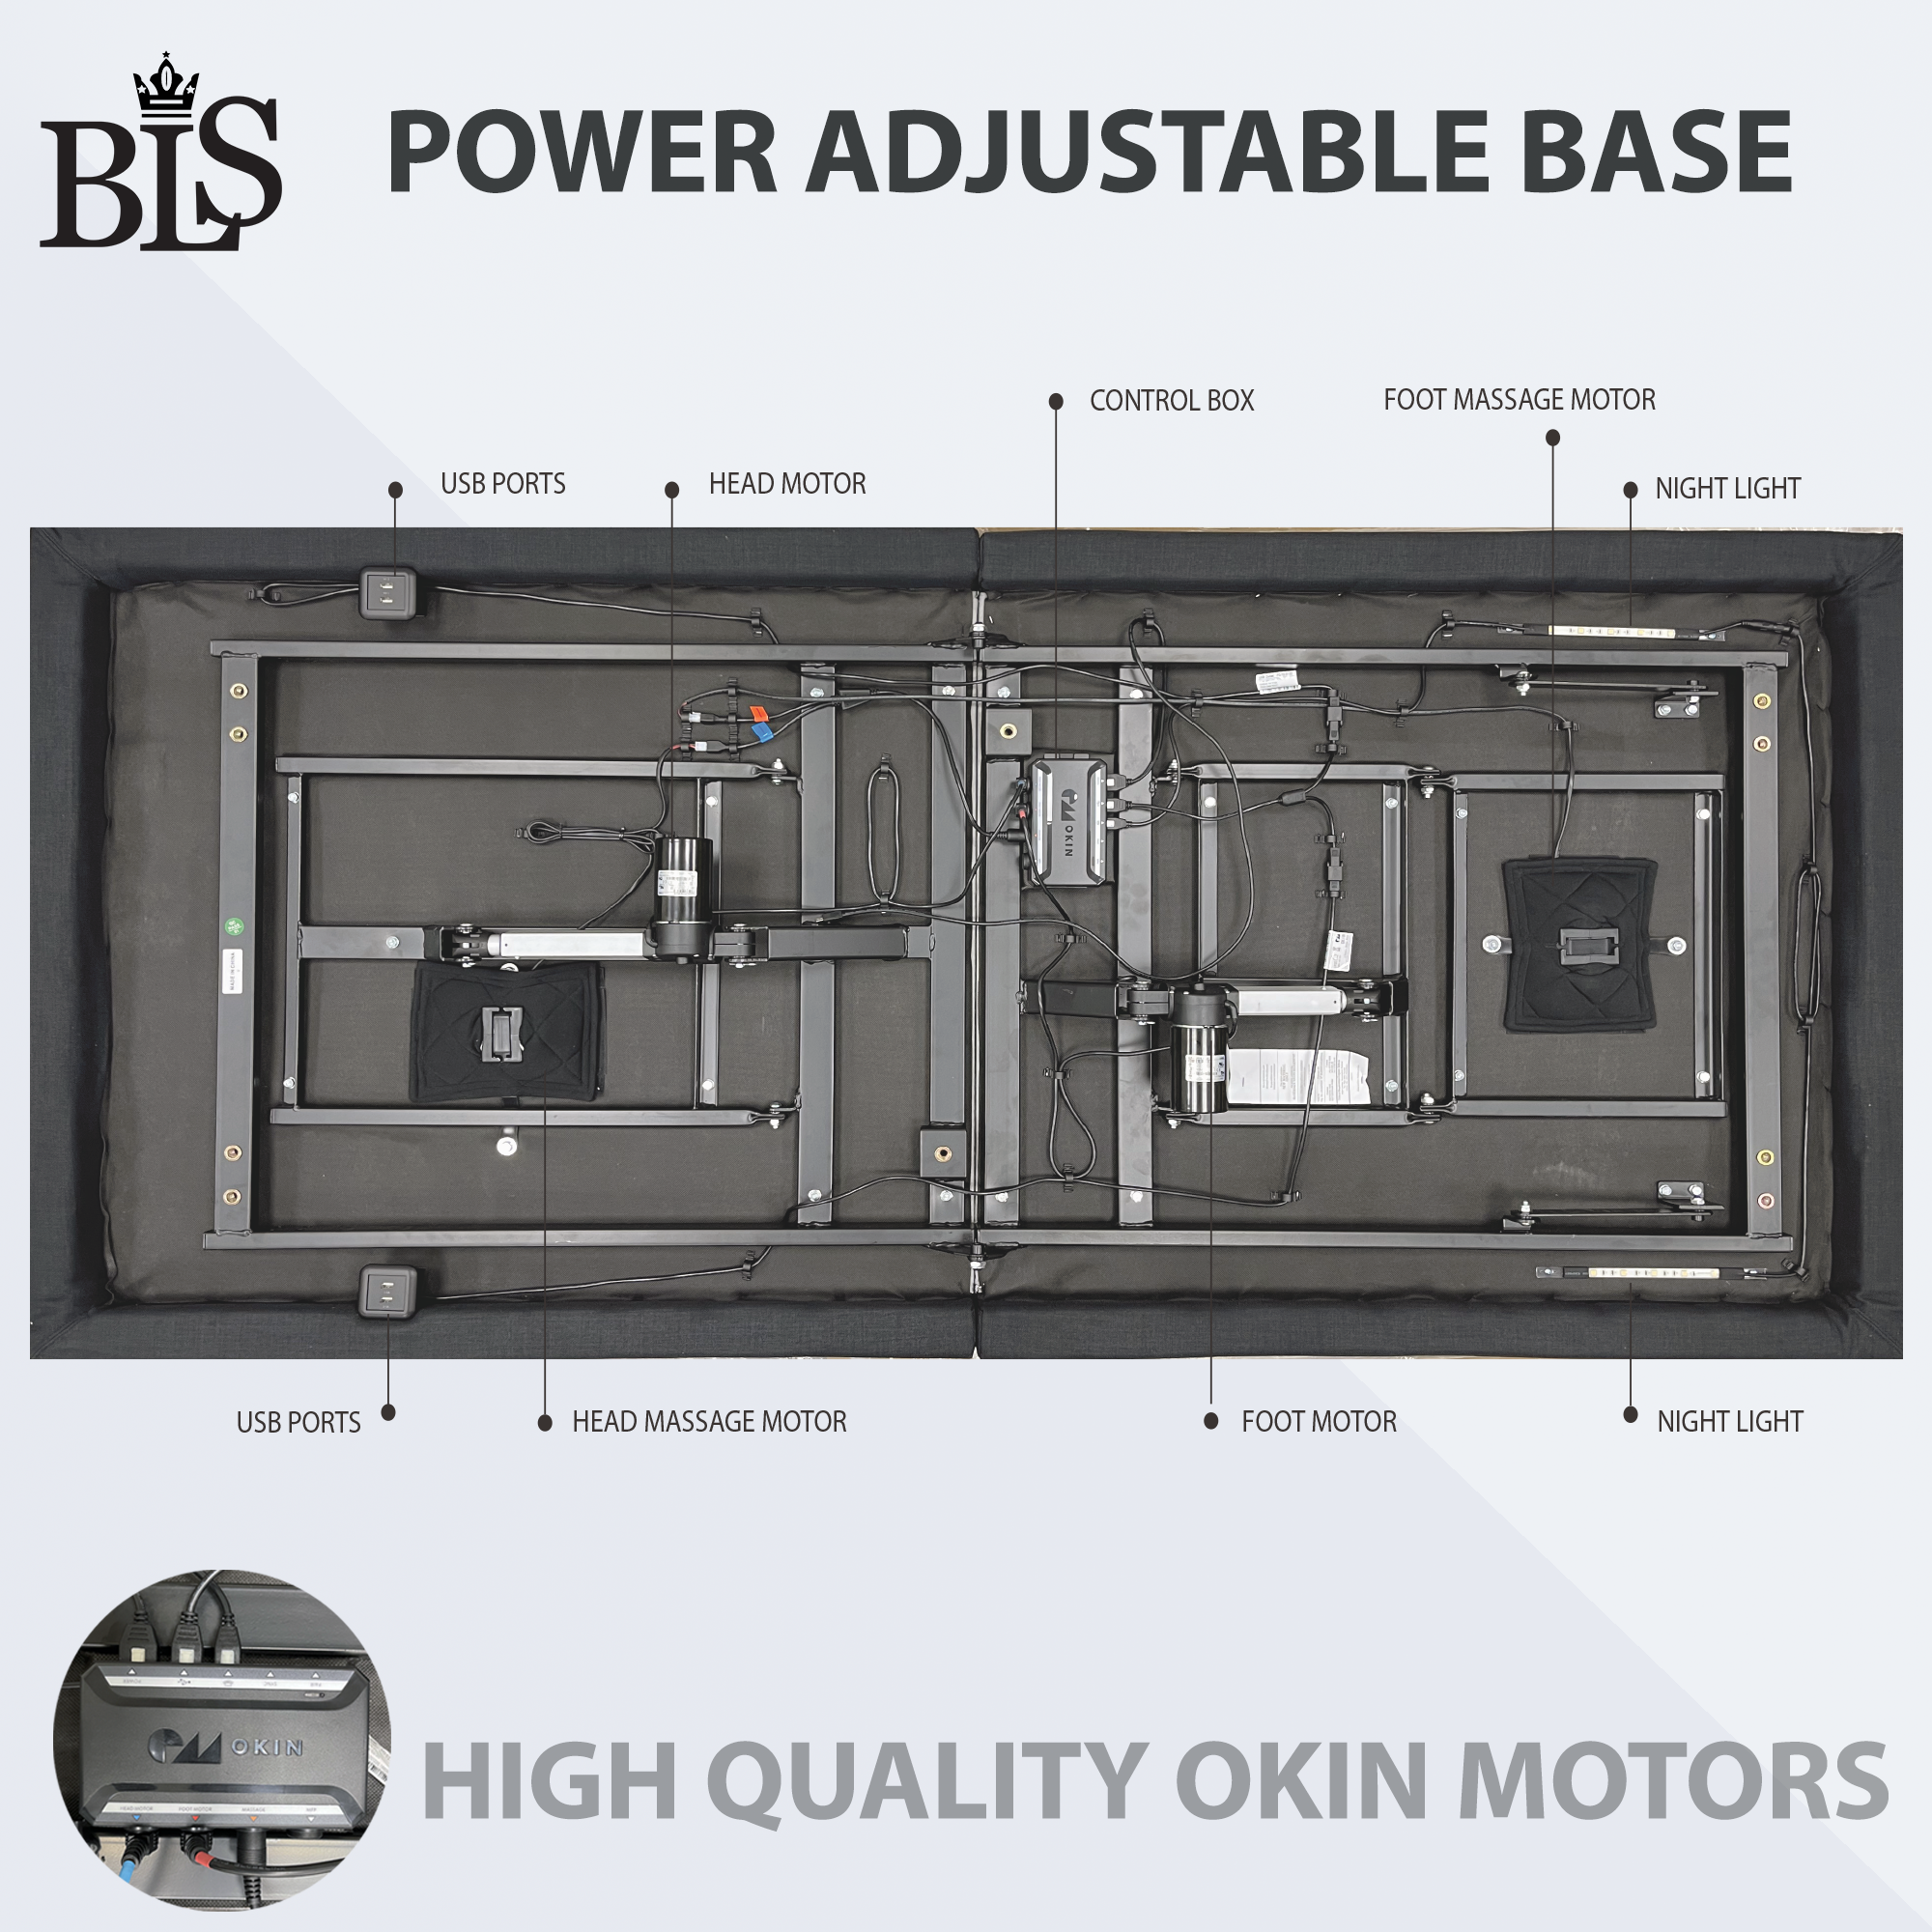 BLS Power Adjustable Base - Split King Size